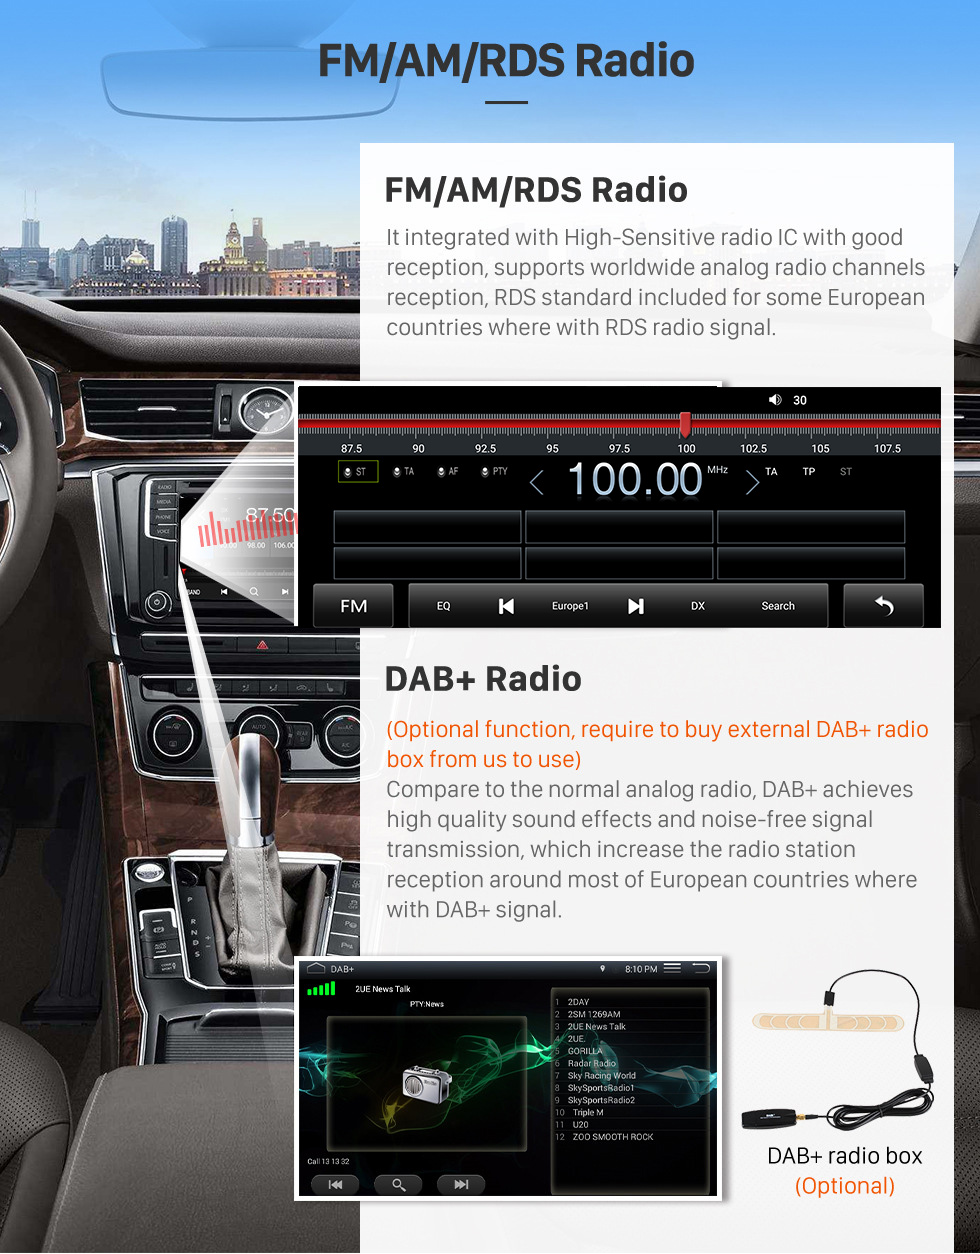 Seicane HD Pantalla táctil Estéreo Android 12.0 Carplay 12.3 pulgadas para 2017 2018 2019-2022 Geely Jiaji Maple Leaf V80 Reemplazo de radio con navegación GPS Soporte Bluetooth FM / AM Cámara de visión trasera WIFI